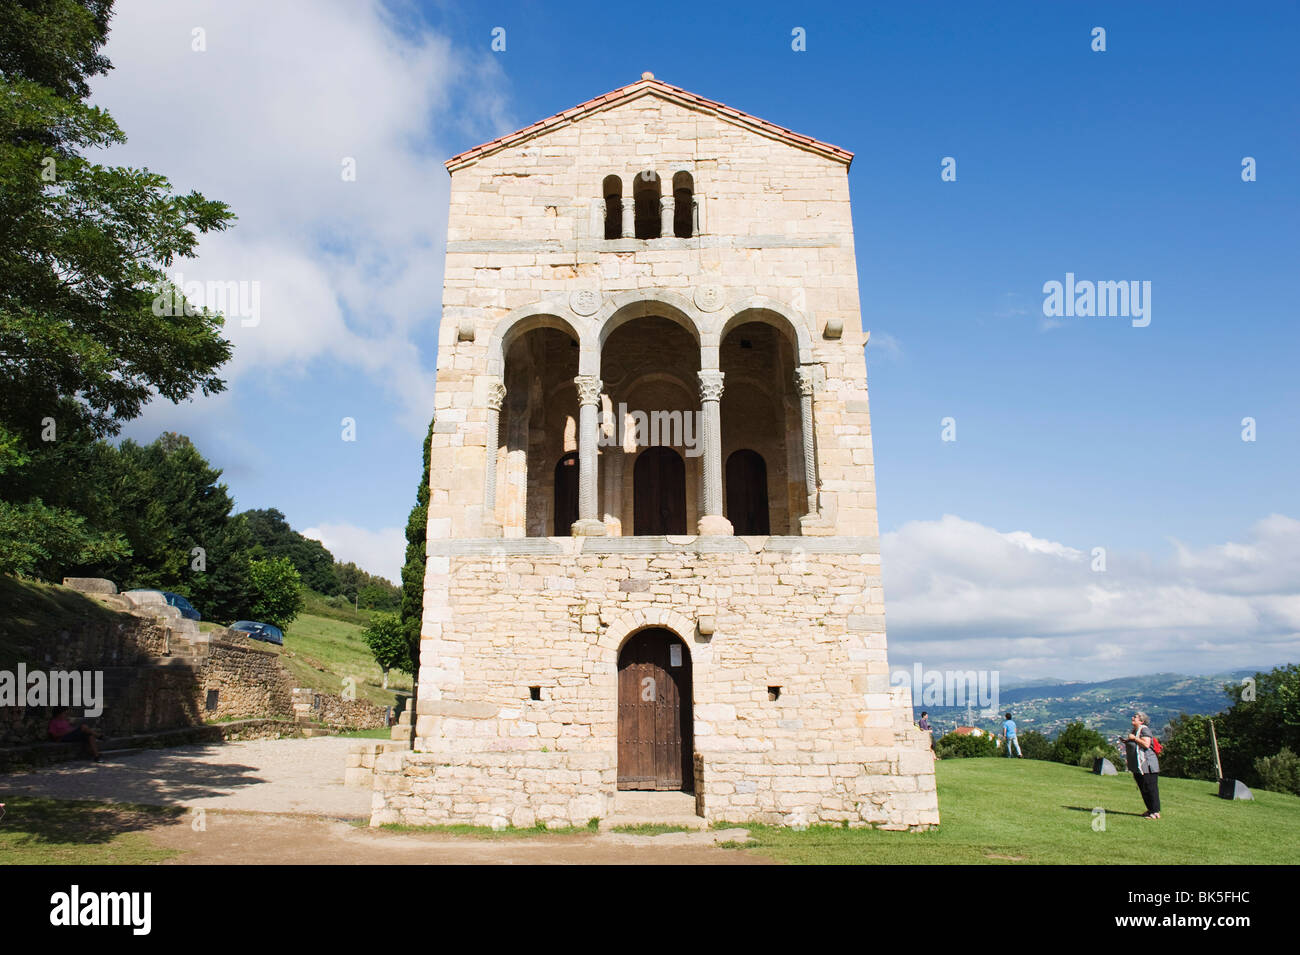 Santa Maria de Naranco, 9e siècle de style pré-roman, UNESCO World Heritage Site, Oviedo, Espagne, Europe Banque D'Images